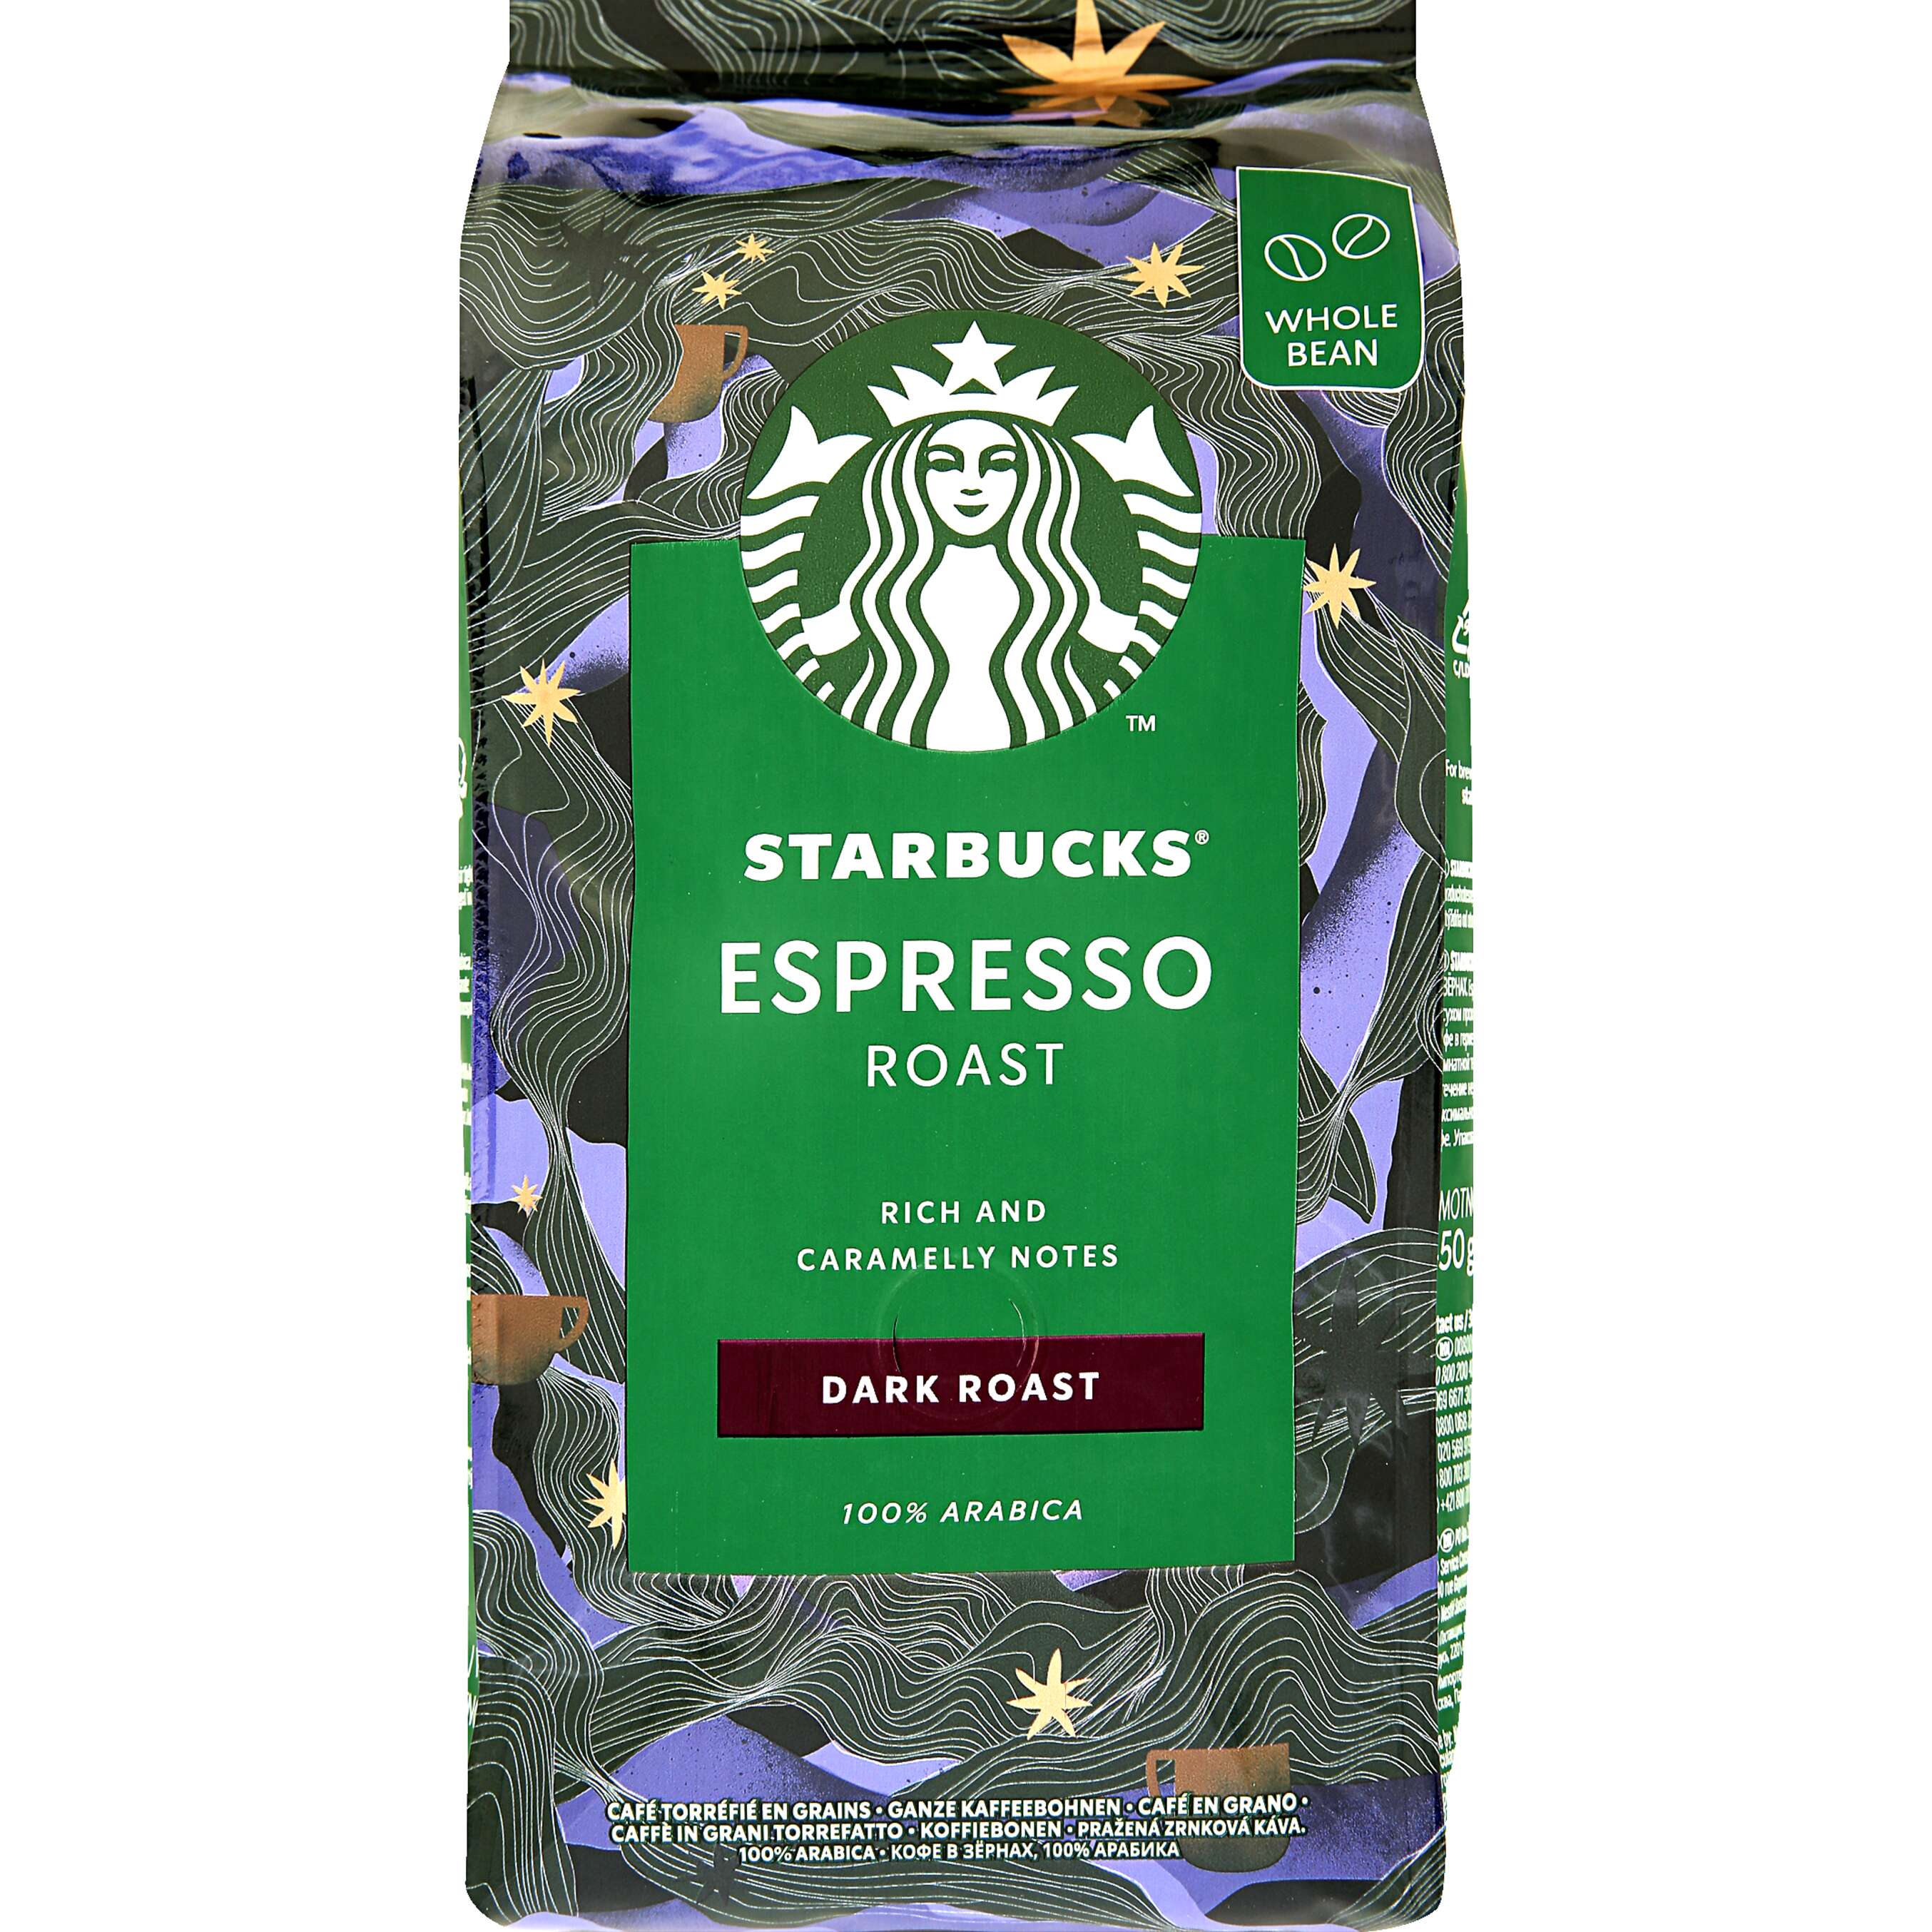 Zobrazit nabídku Starbucks Znková káva